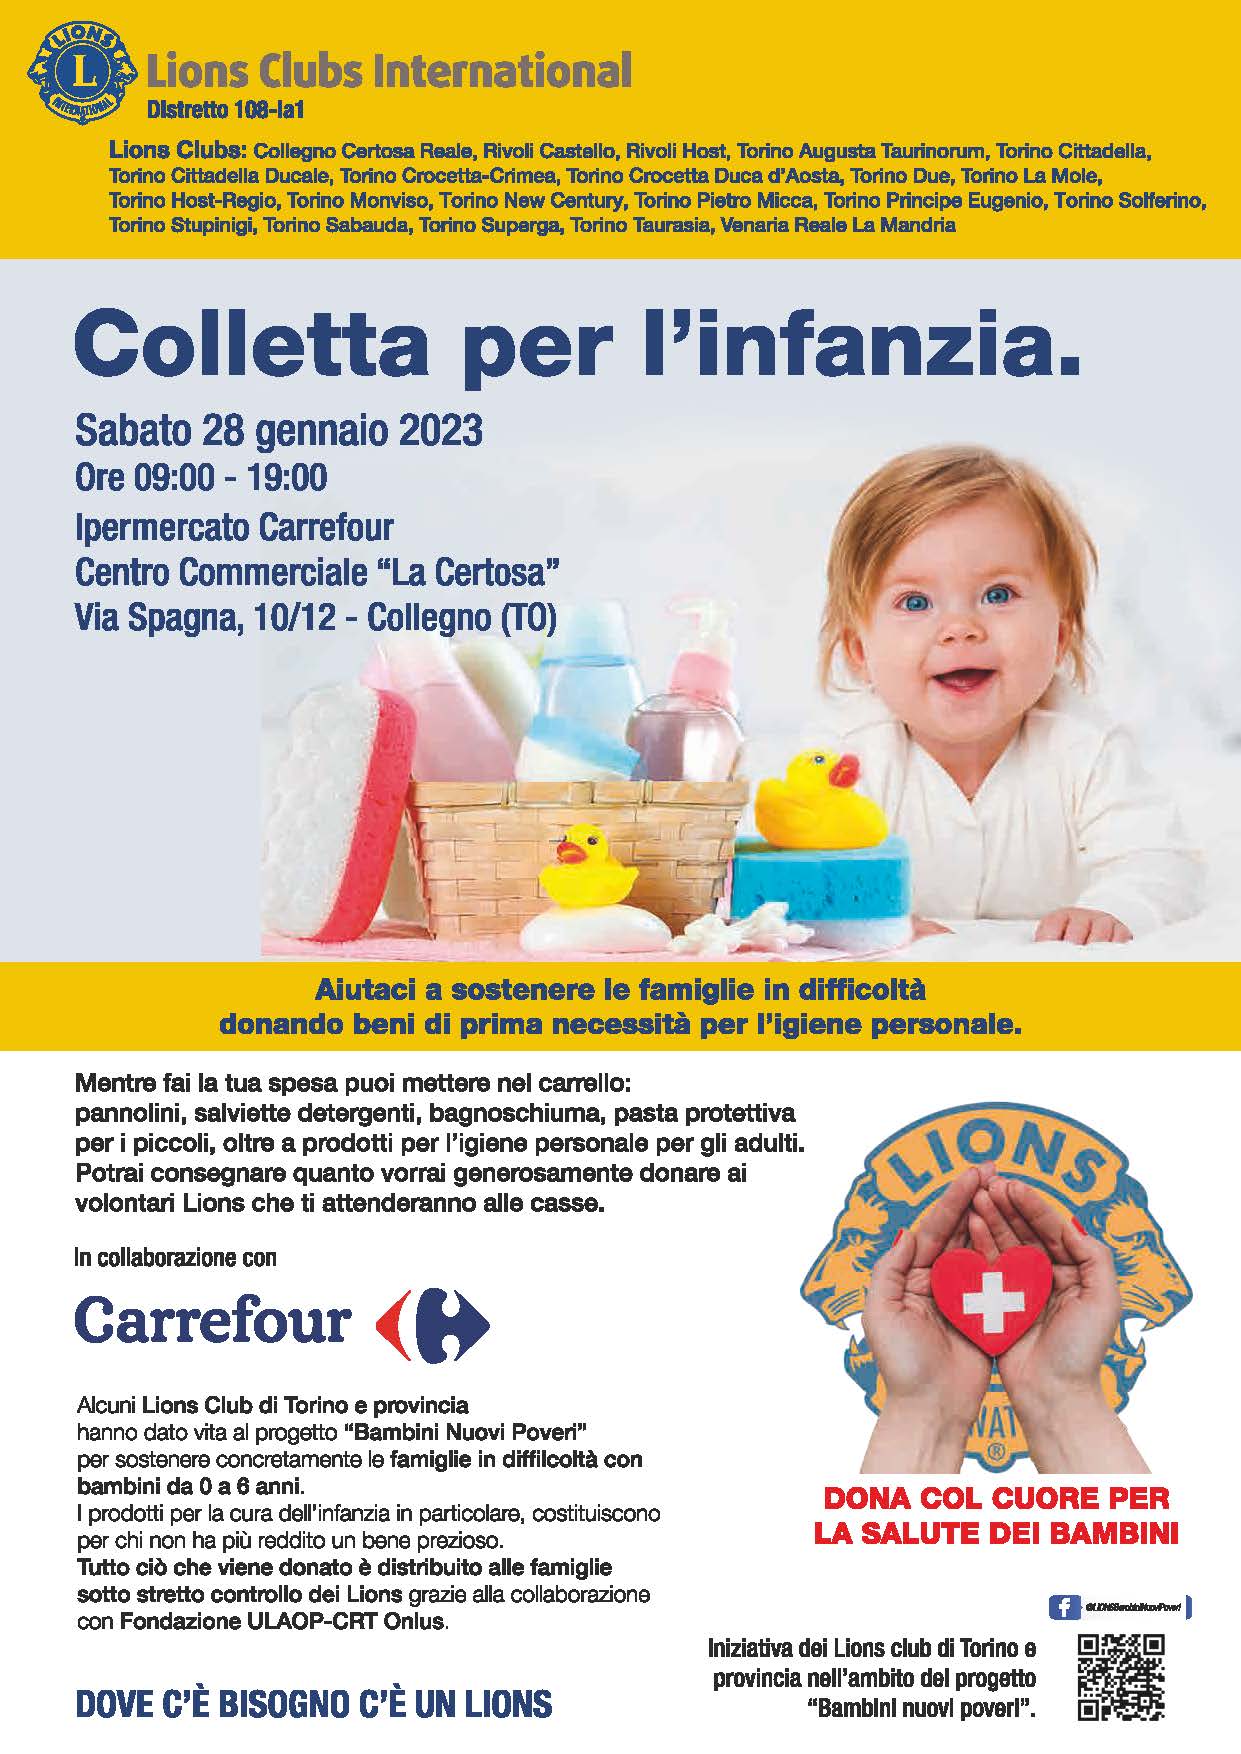 Colletta per l'infanzia Lions - Sabato 28/01/2023, ipermercato Carrefour Collegno